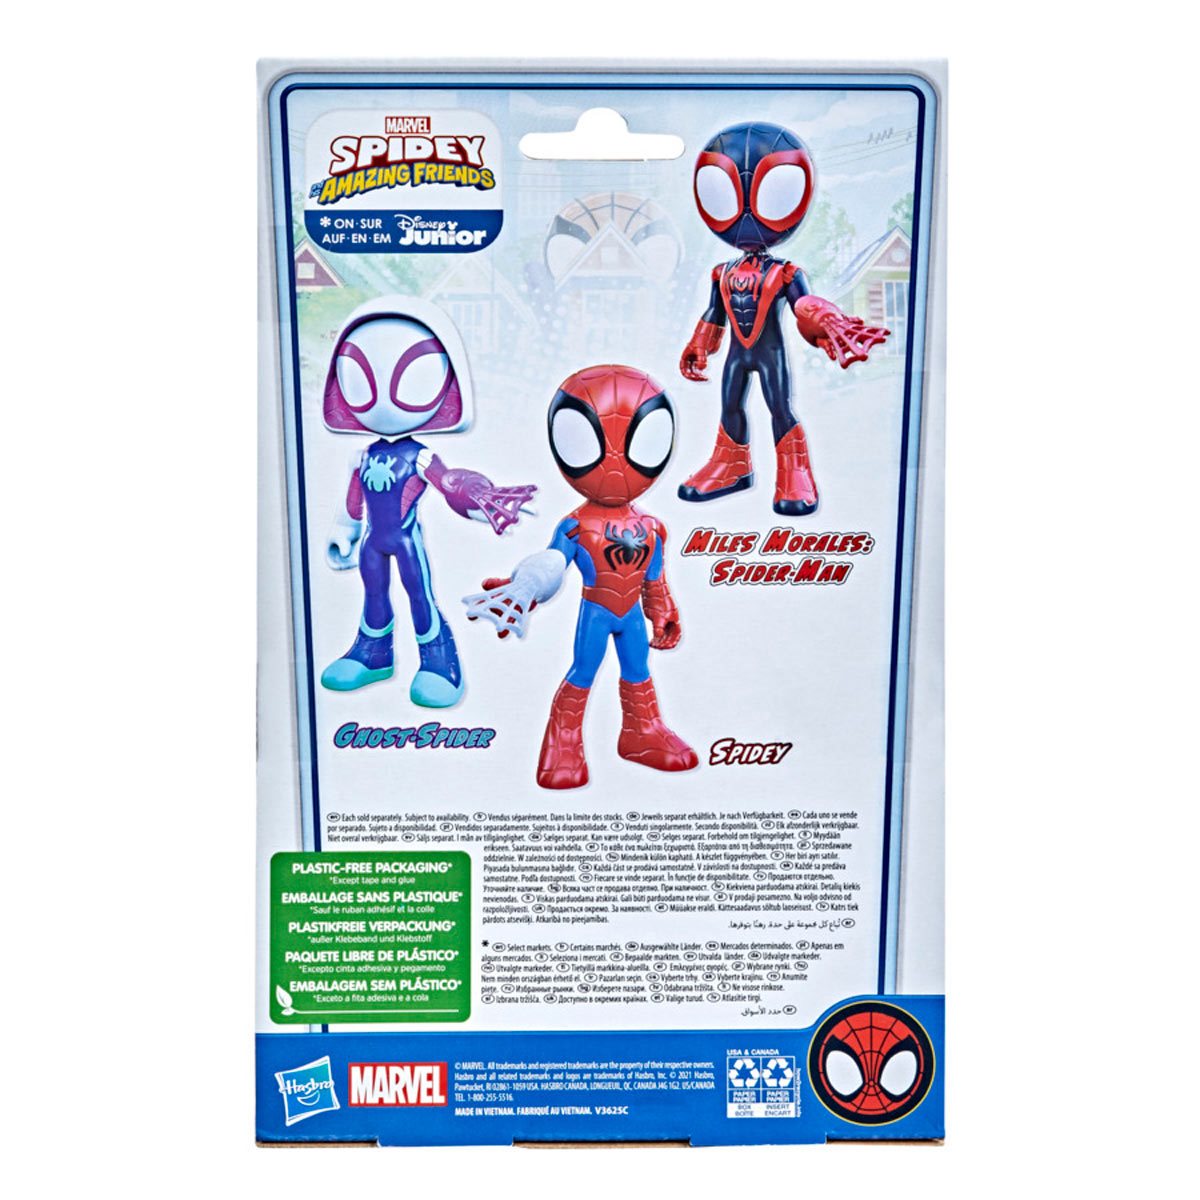 Spidey And His Amazing Friends, Disney Junior, Spider-Man